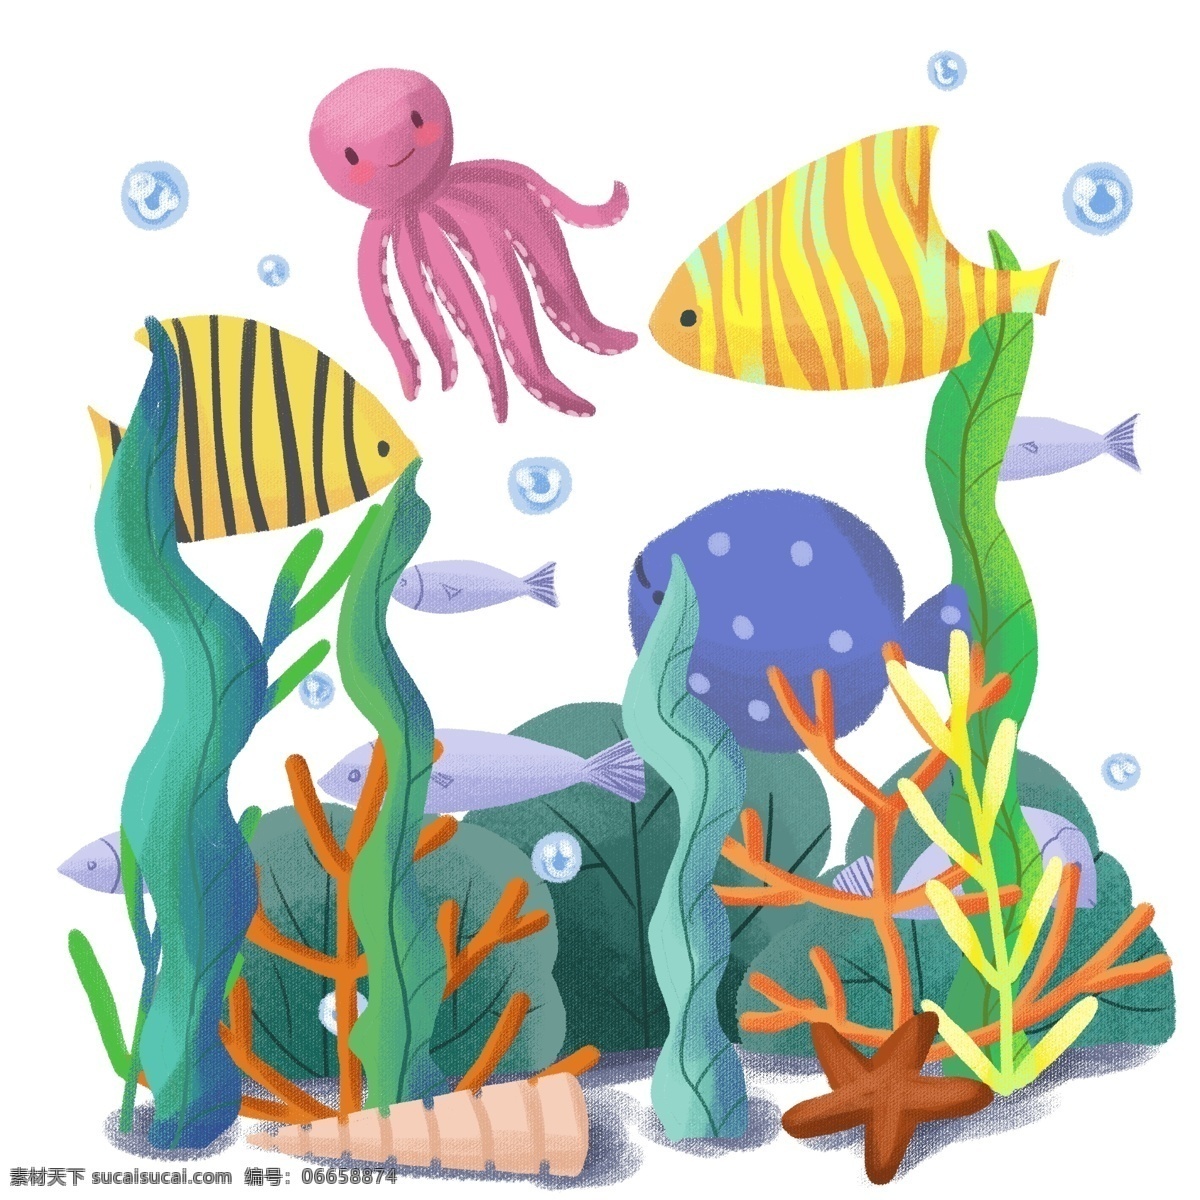 手绘 可爱 卡通 动物 海洋 海底 世界 鱼类 水草